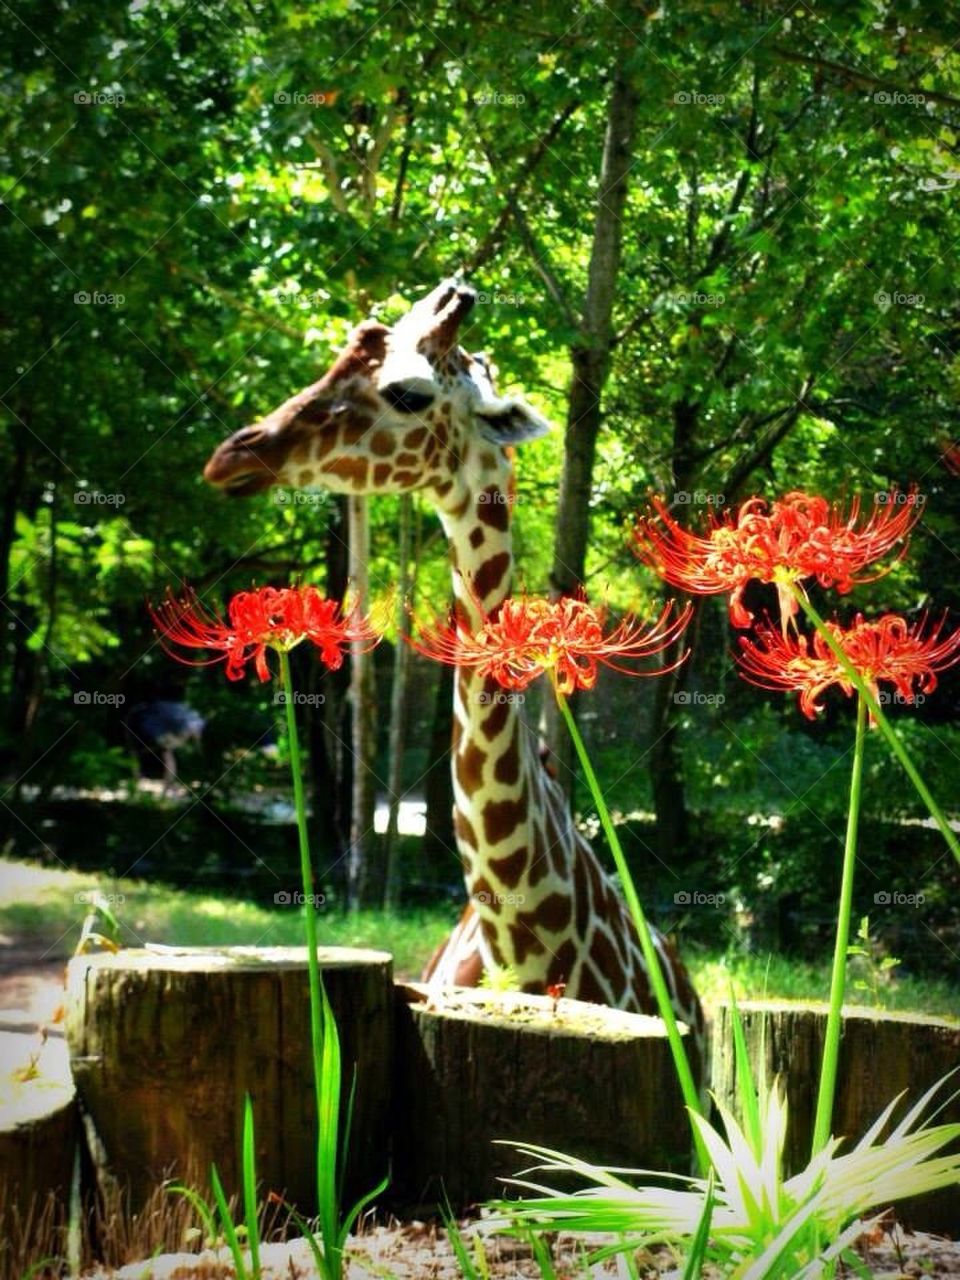 Giraffe and Flowers